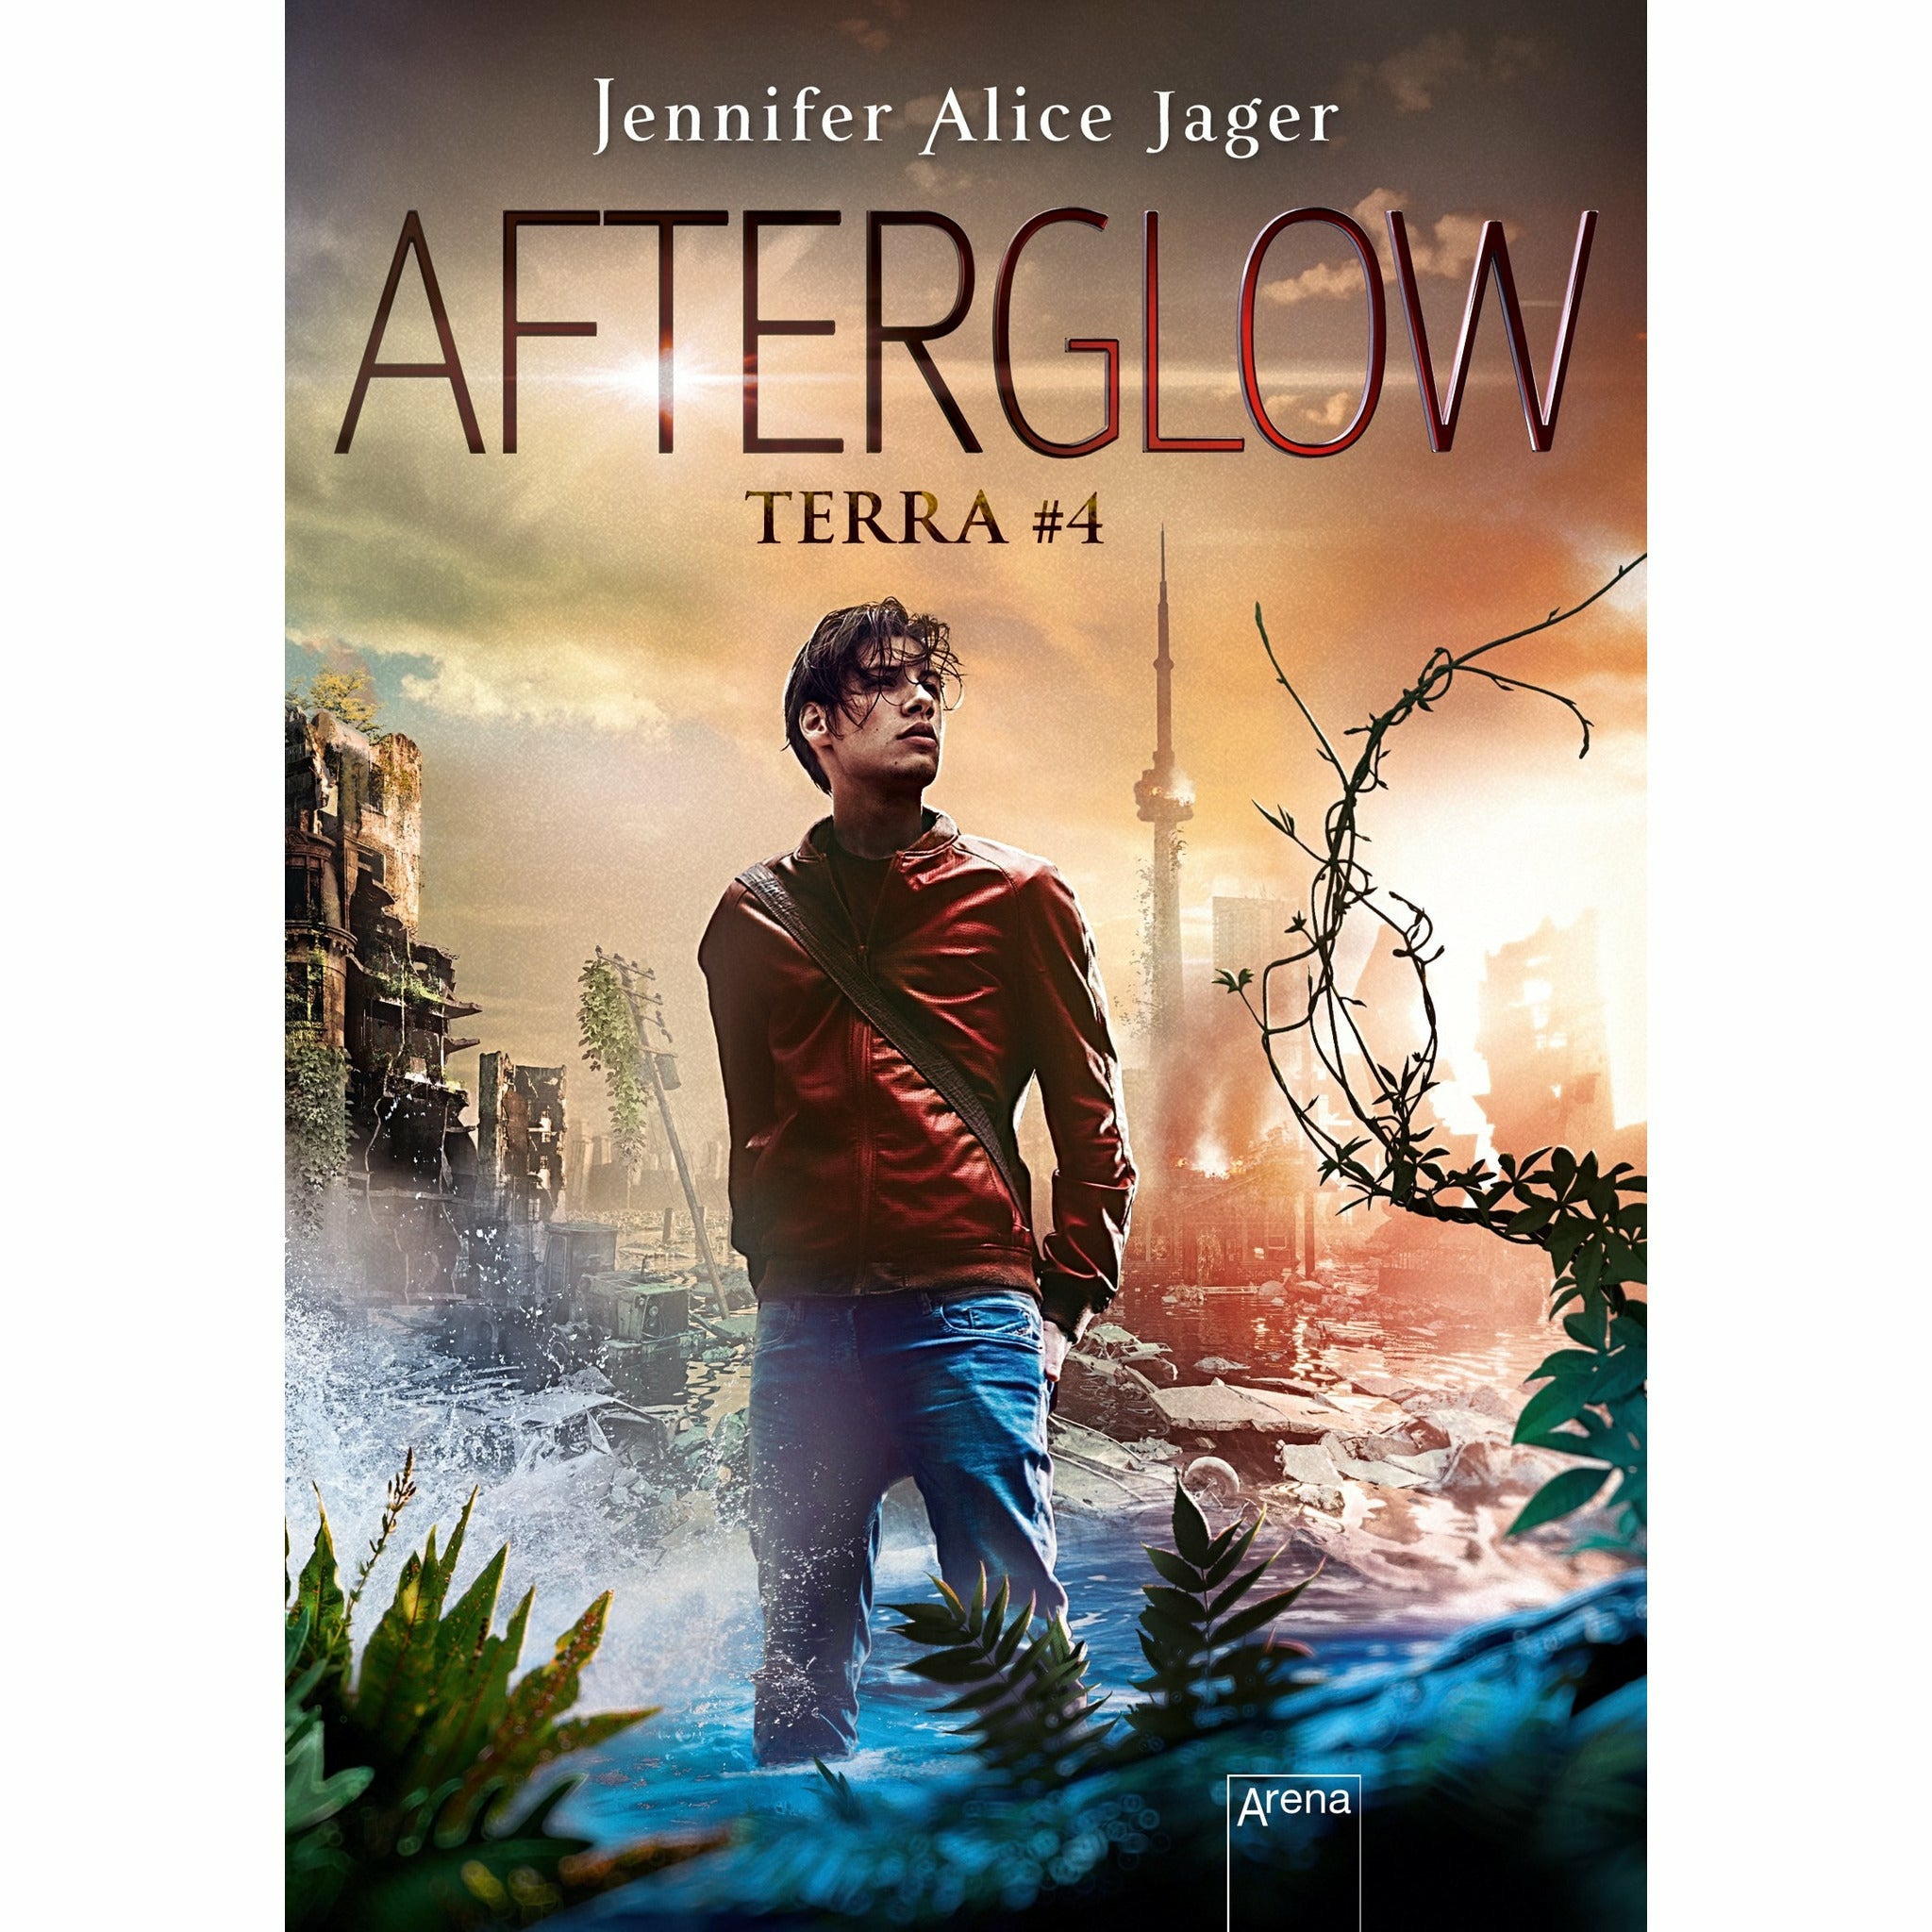 Afterglow Terra #4, Jennifer Alice Jager